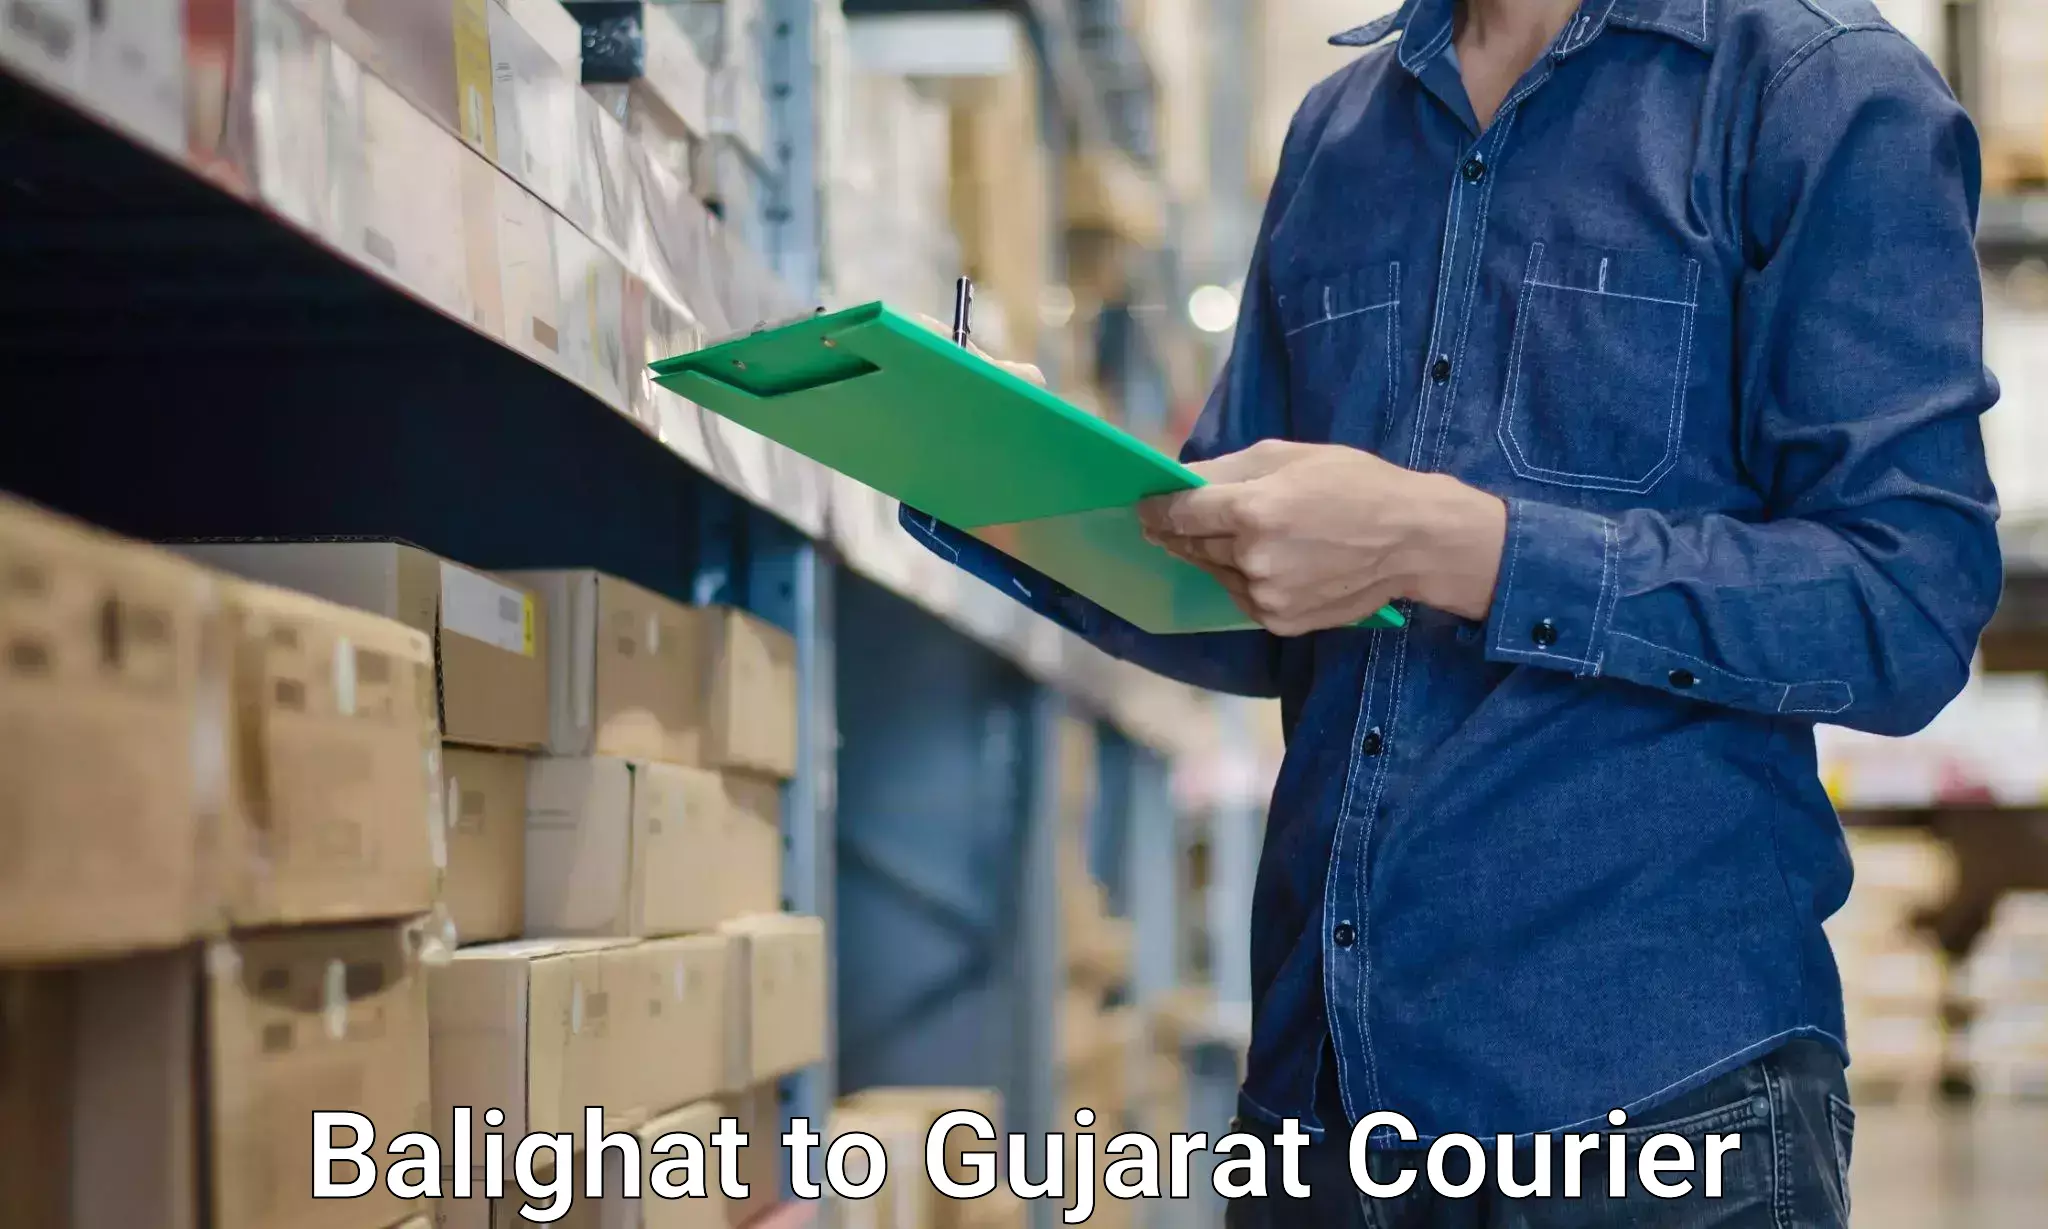 Furniture moving experts Balighat to Gujarat